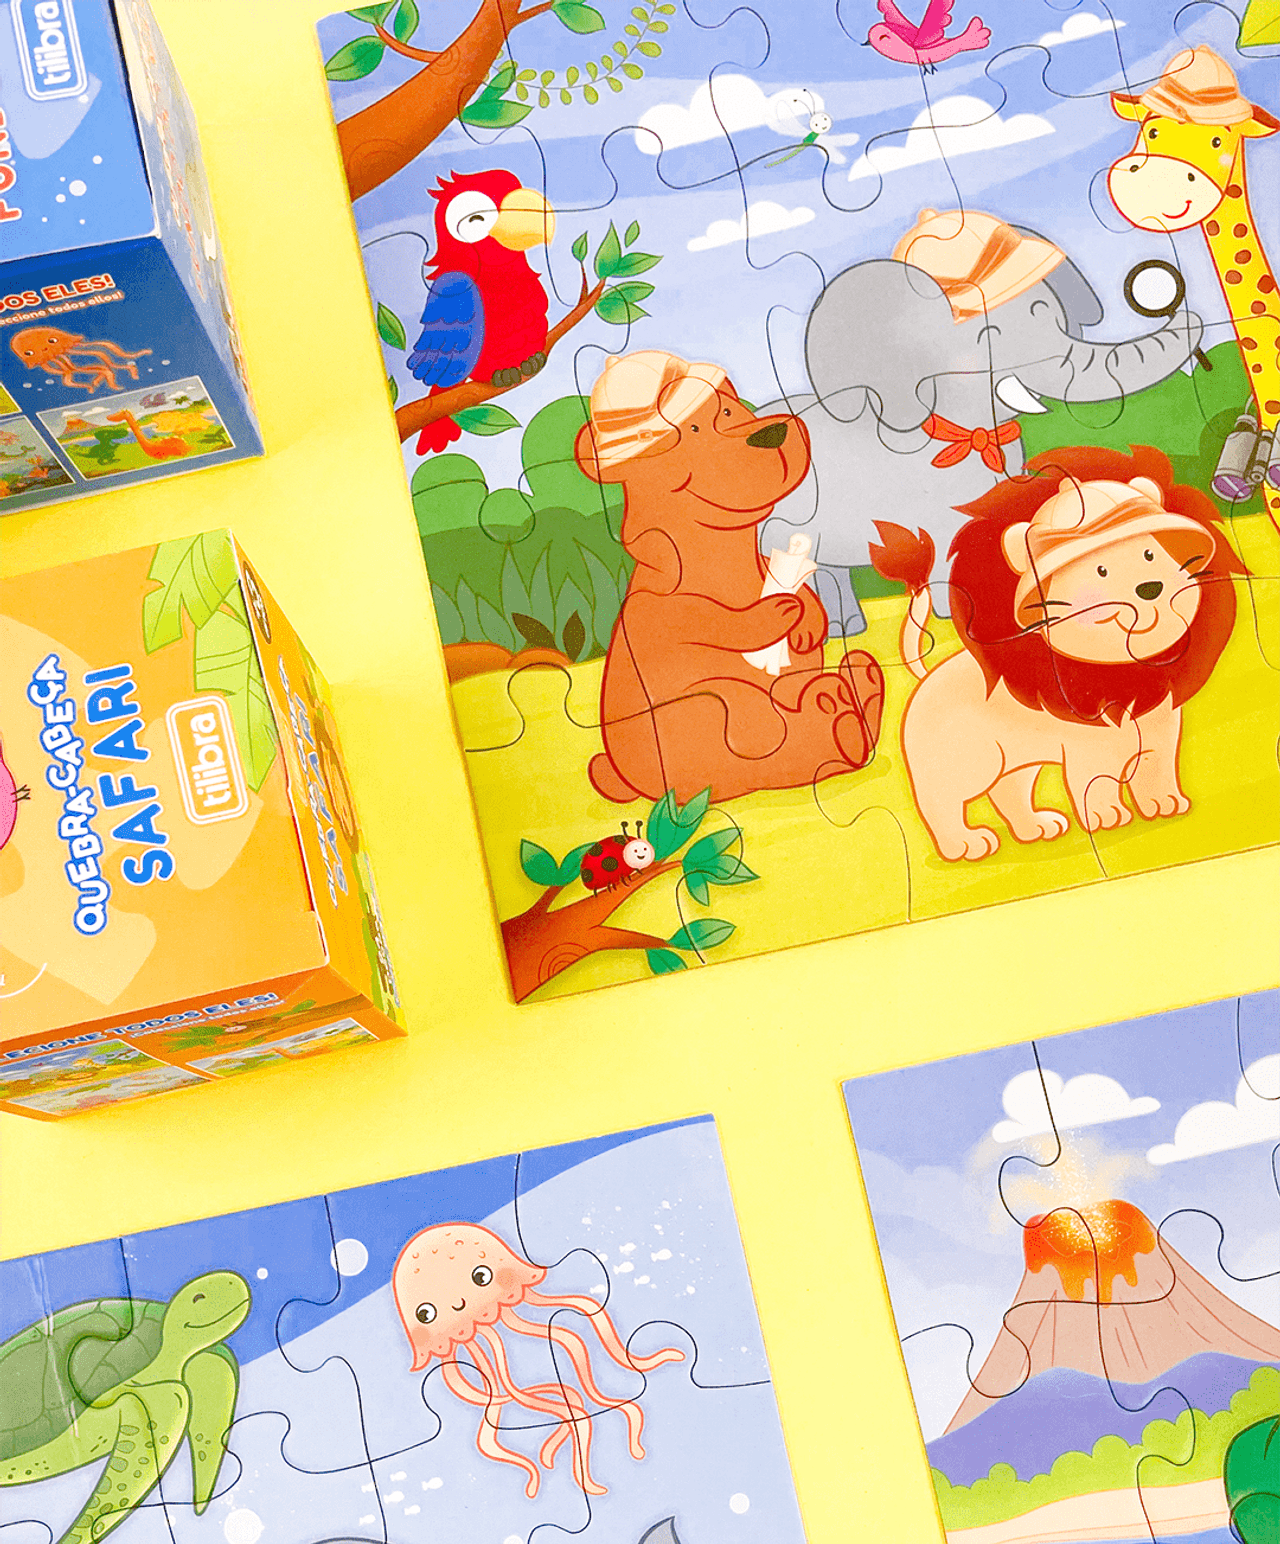  quebra-cabeça colorido com temas de animais selvagens como leão, elefante, girafa e outros, montadas sobre uma superfície amarel